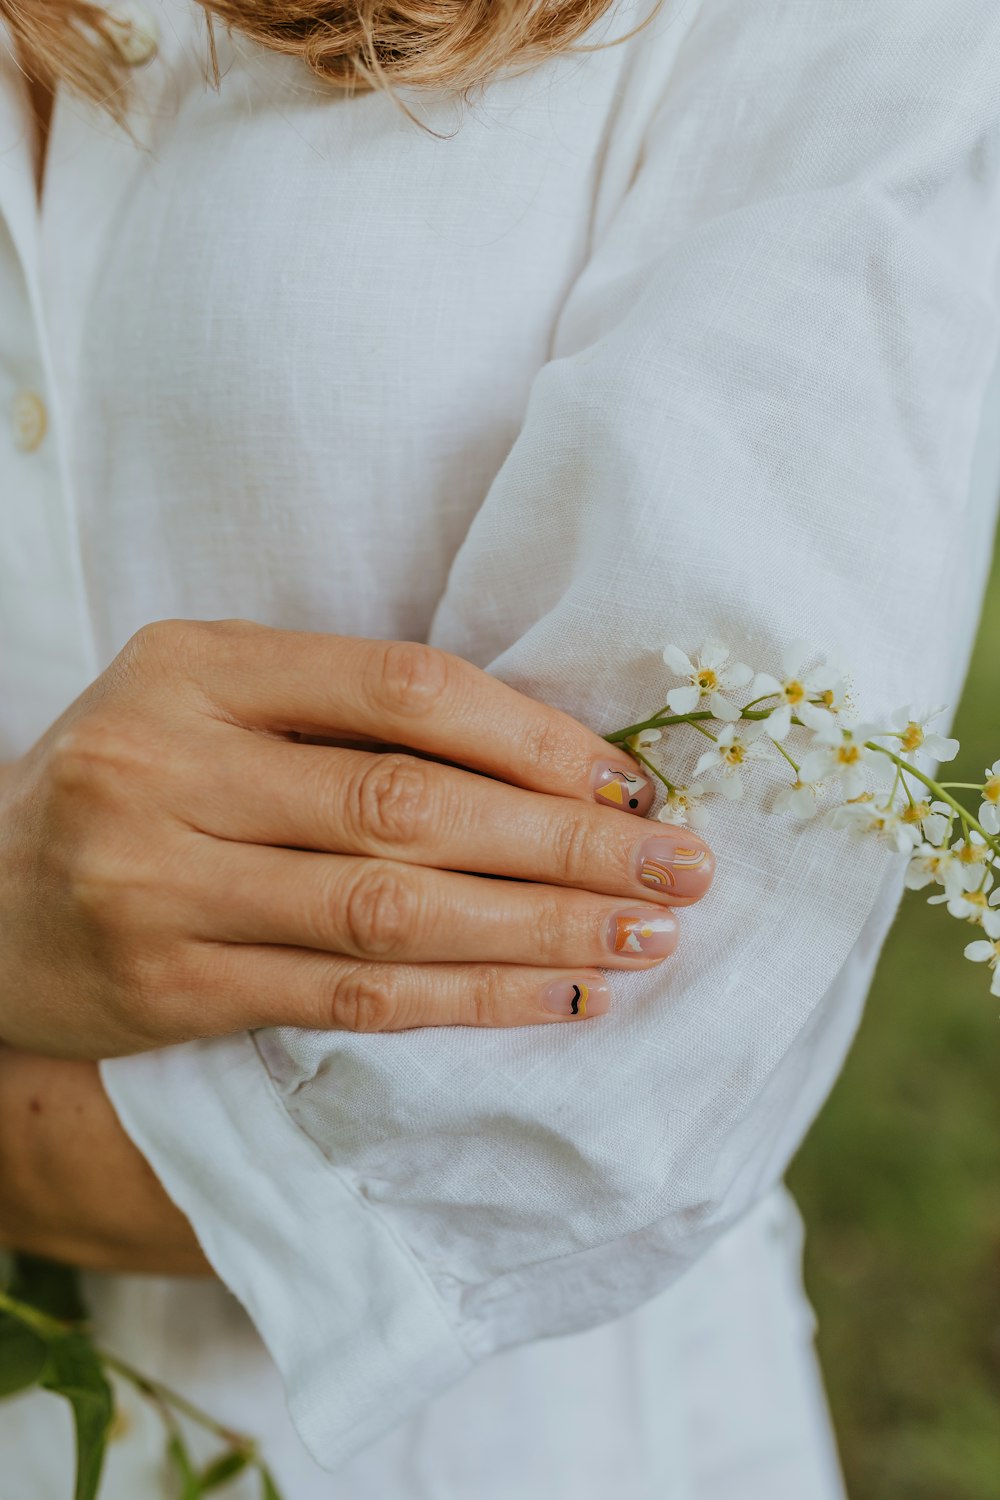 Una mujer sosteniendo una flor en sus manos